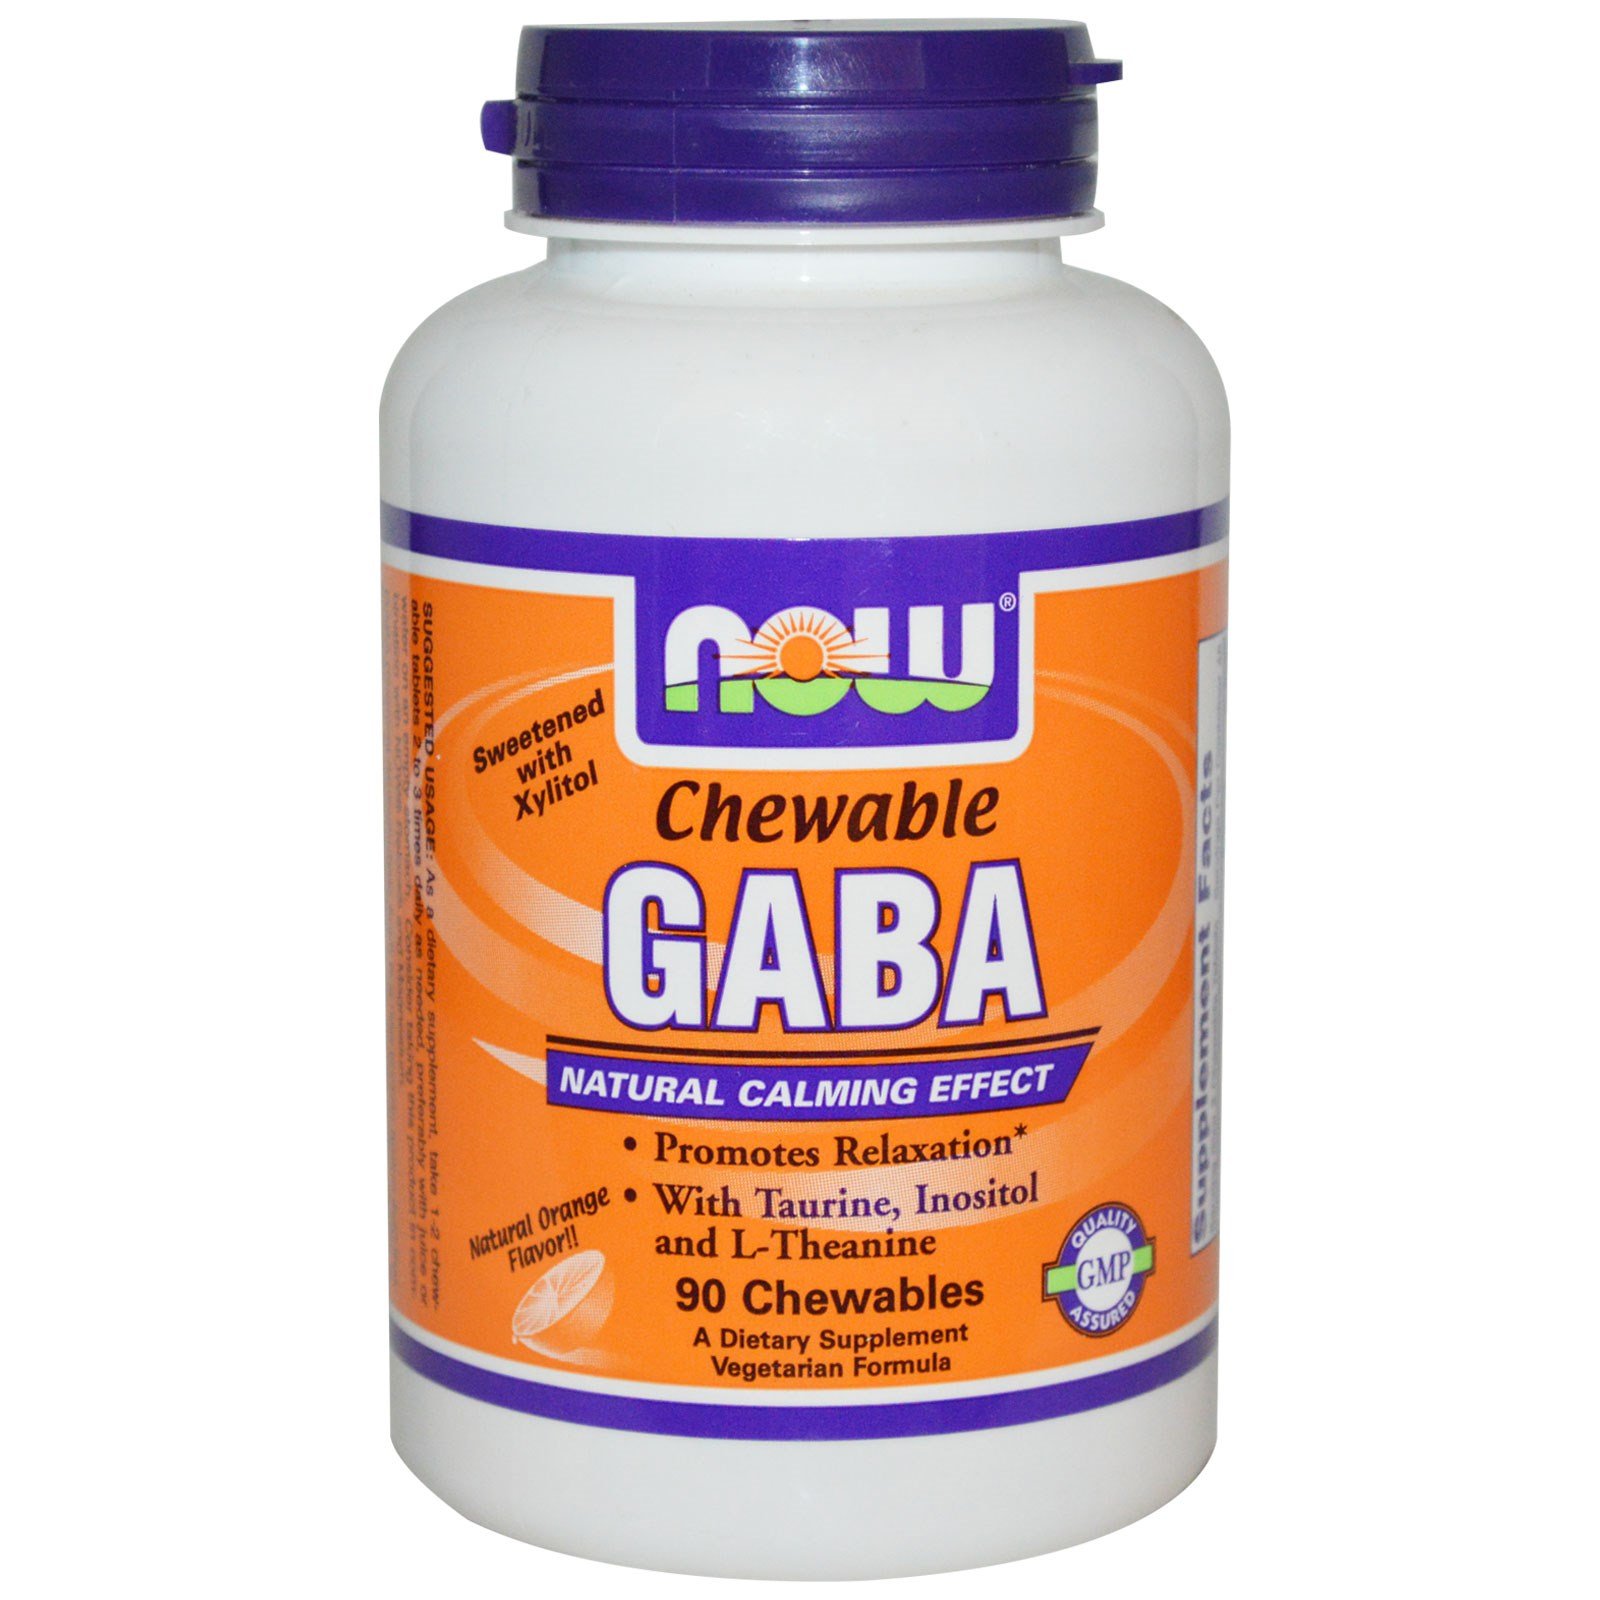 GABA Chewable, 90 шт, Now. Спец препараты. 